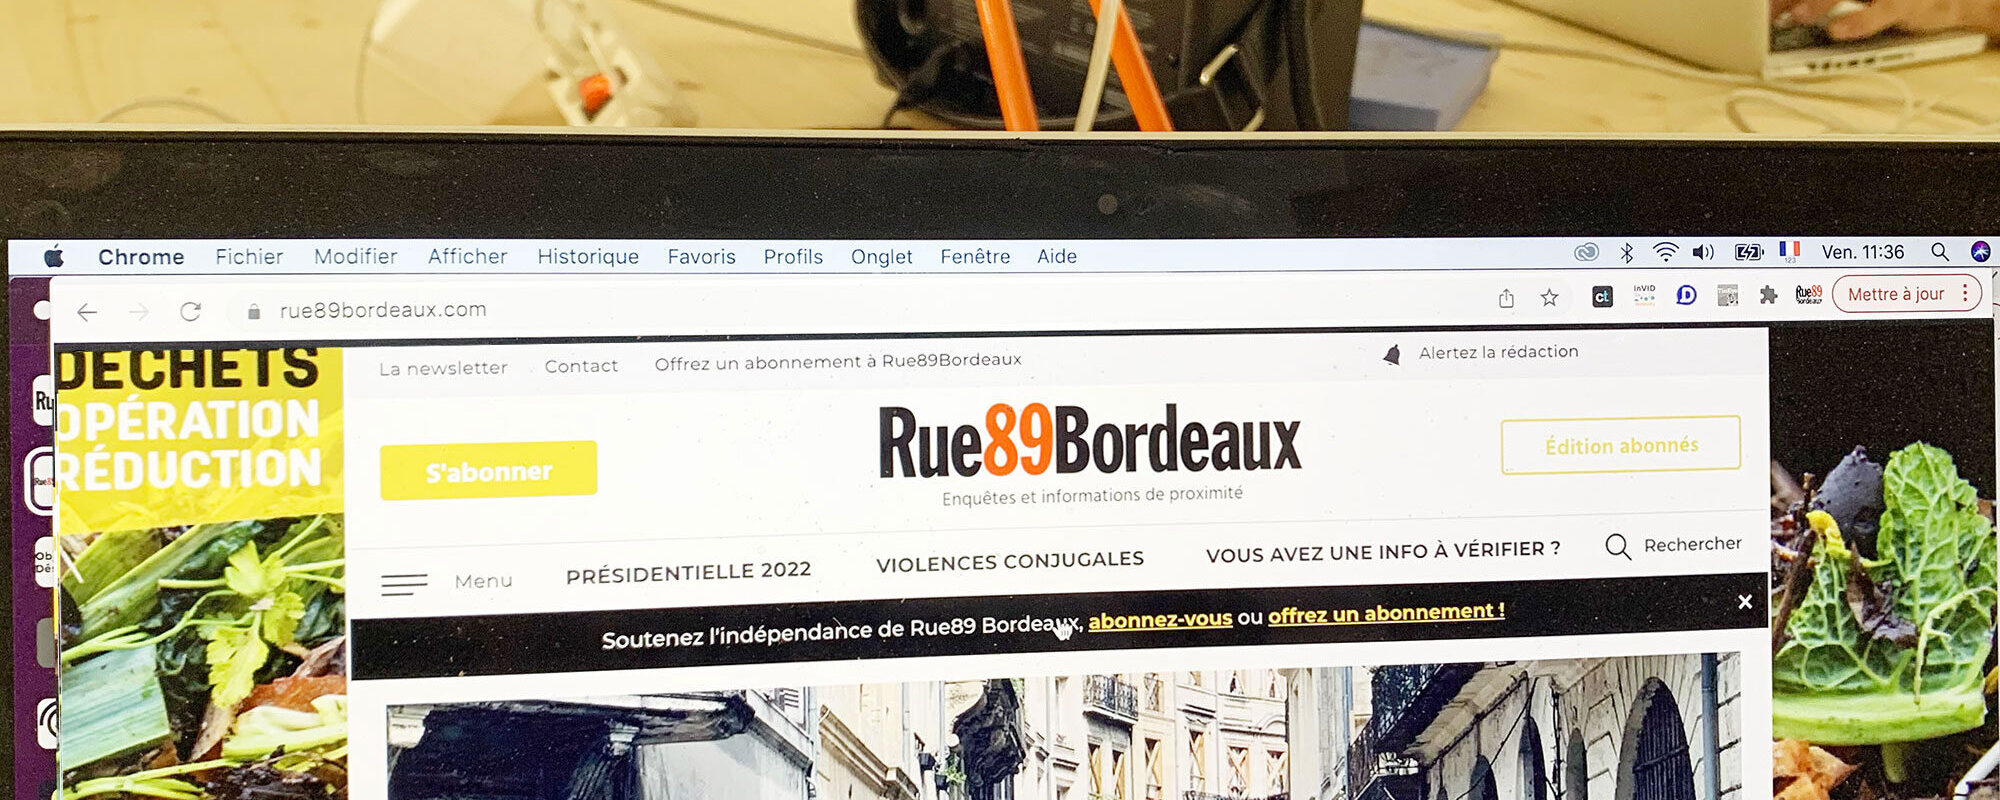 Rue89 Bordeaux : les abonné.e.s au soutien de l’information locale et sa « liberté de ton »